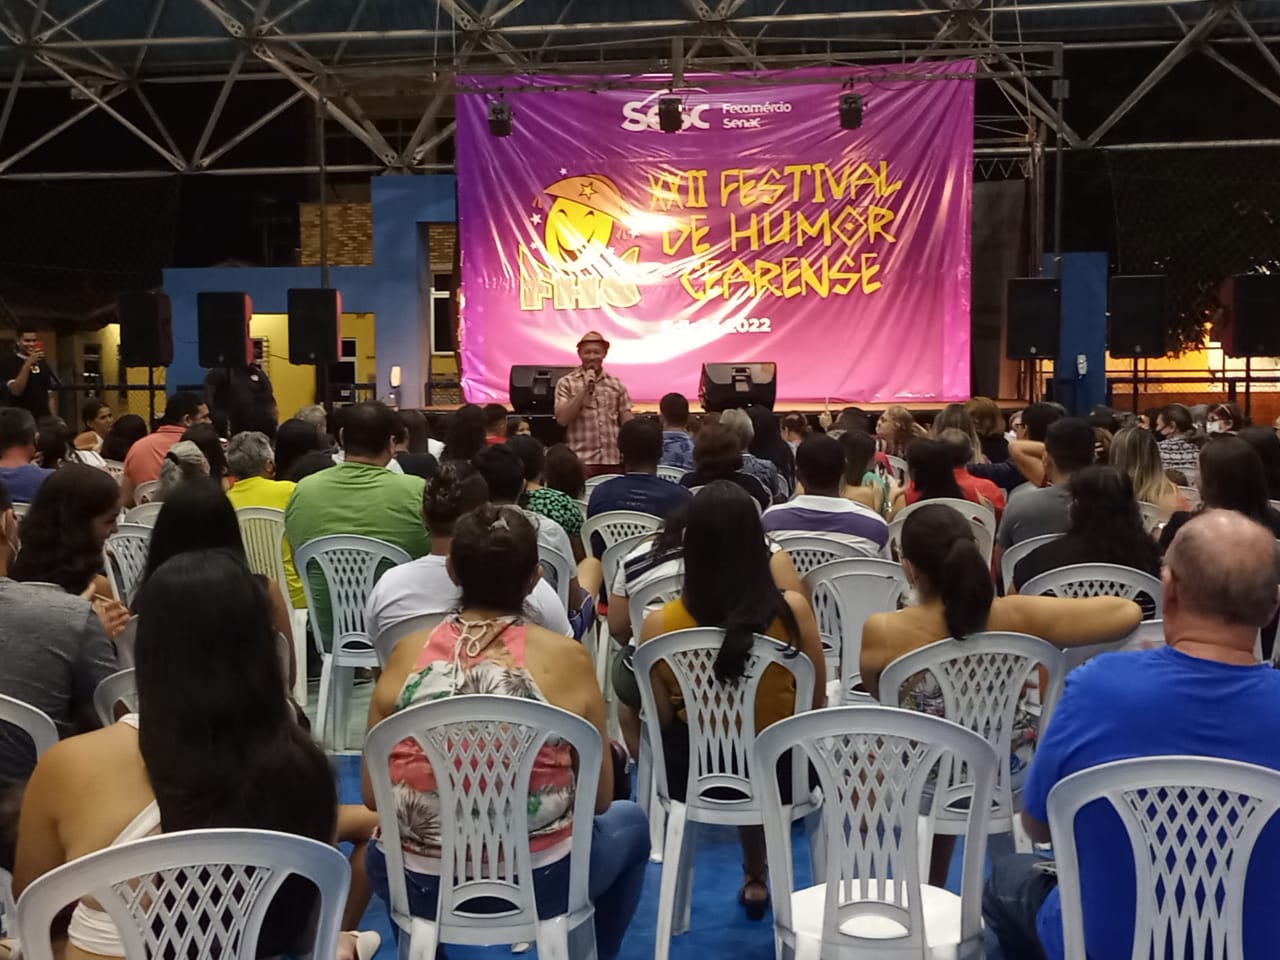 Festival de Humor Cearense realiza apresentações em Iguatu